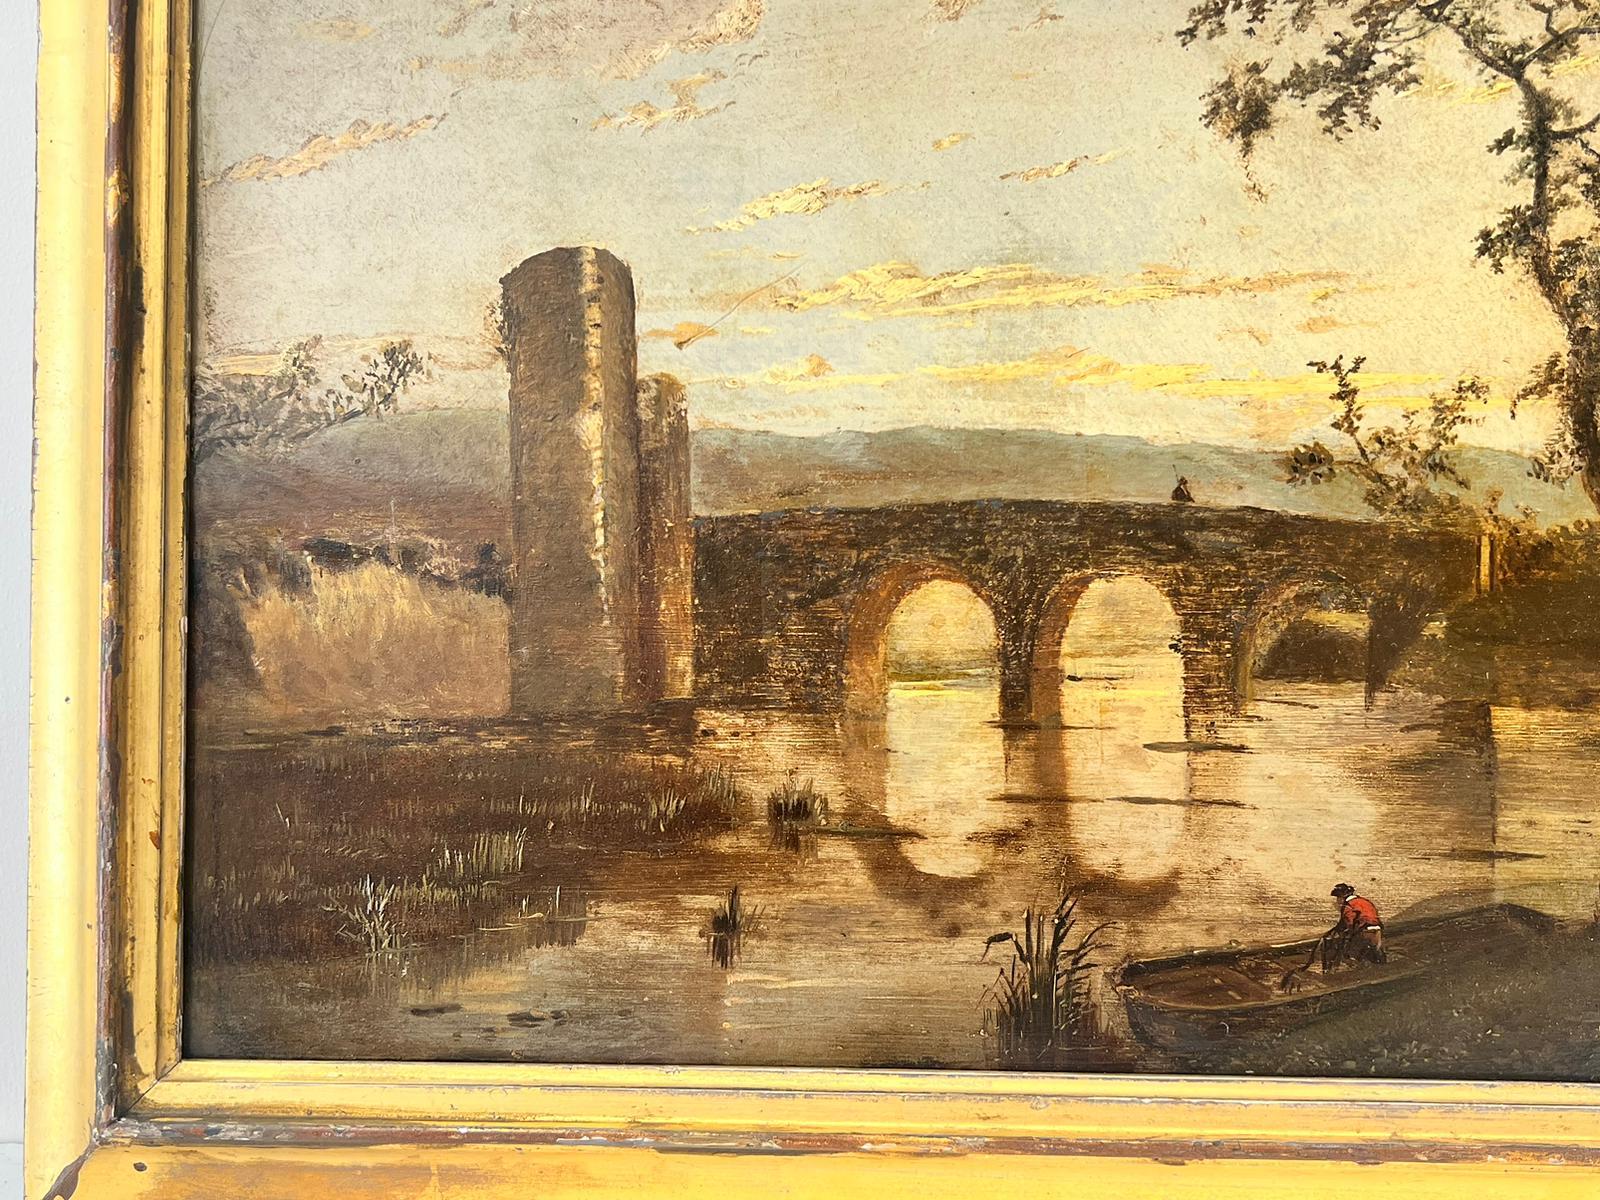 Romantische Landschaft, Sonnenuntergang, Figuren, Fluss- und Bogenbogen, Öl  (Romantik), Painting, von 19th century Dutch School